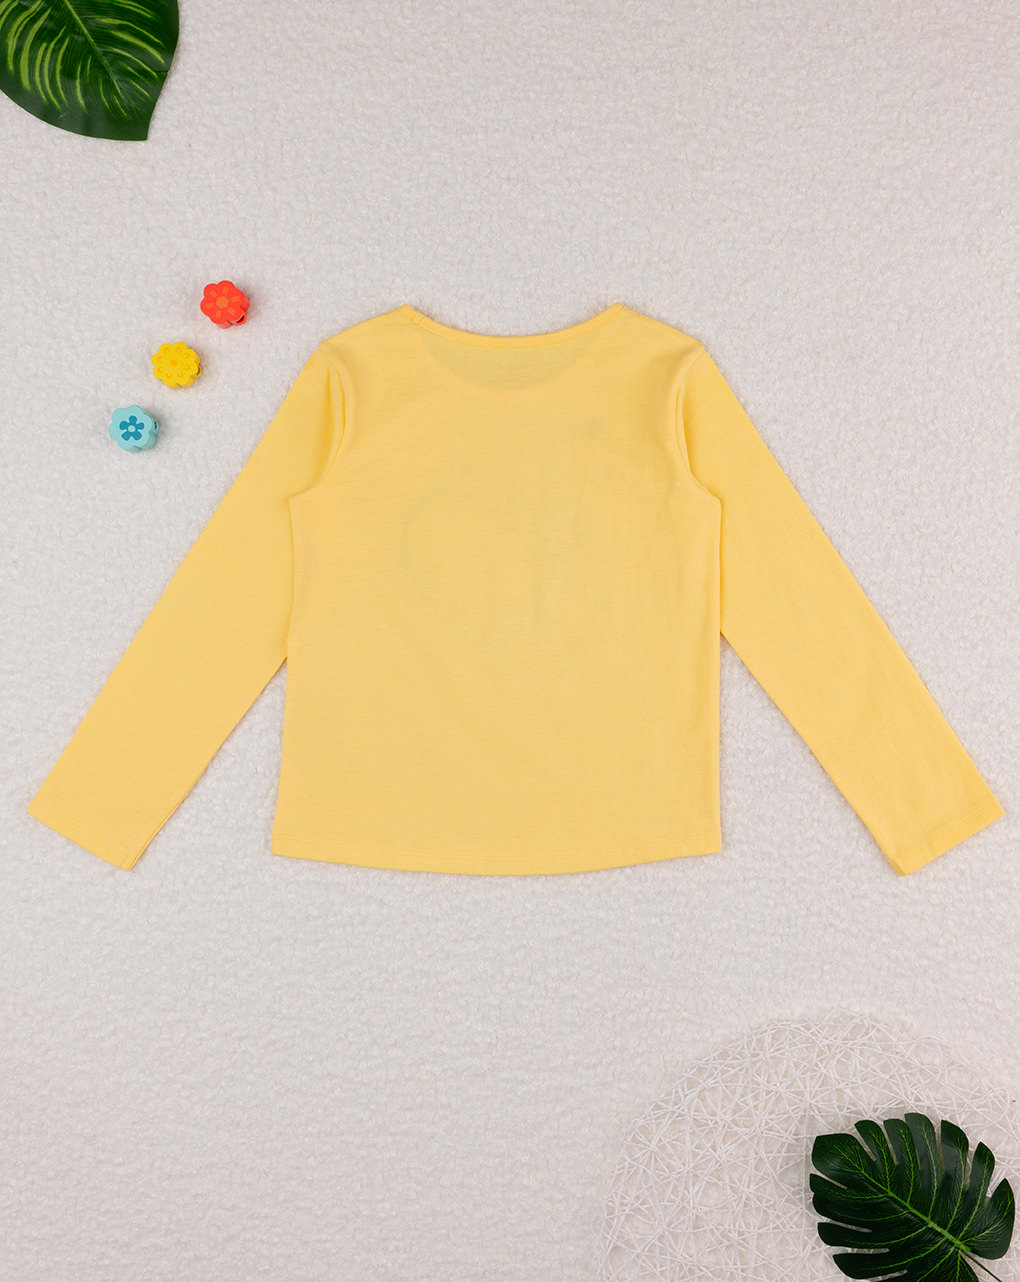 παιδική μπλούζα κίτρινη με καρδούλα για κορίτσι - Prénatal